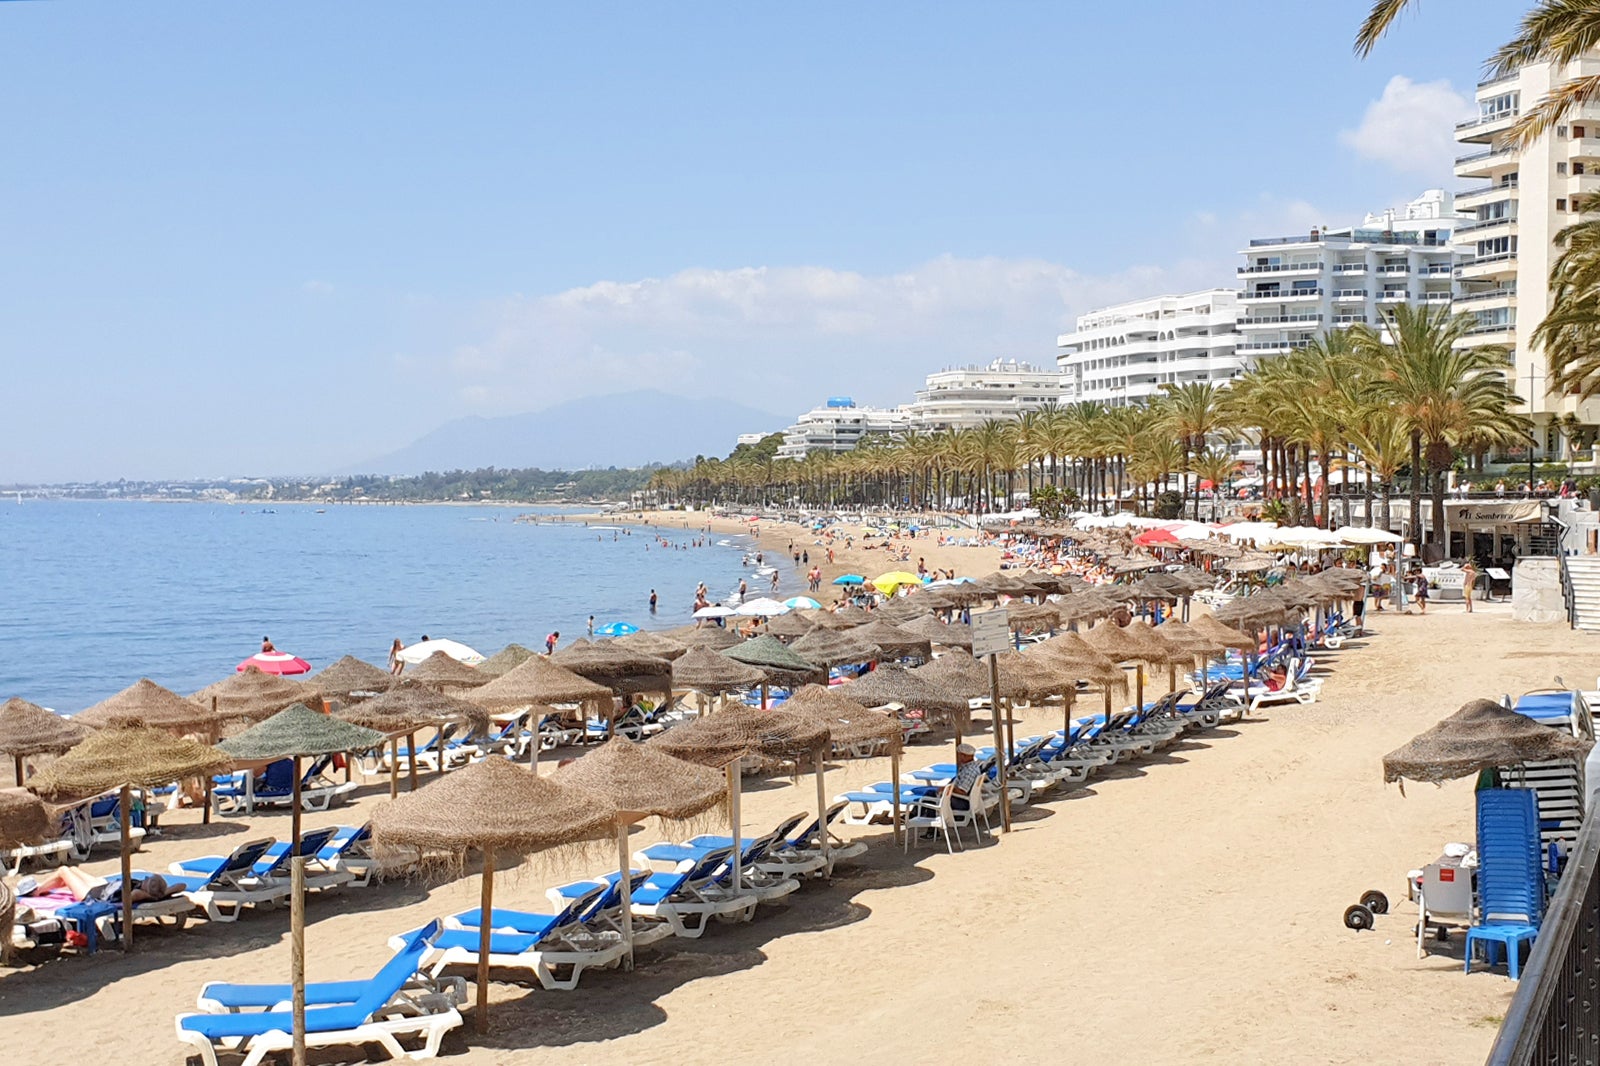 Puerto Banus Marbella Spain Luxury Lifestyle Experience Update May